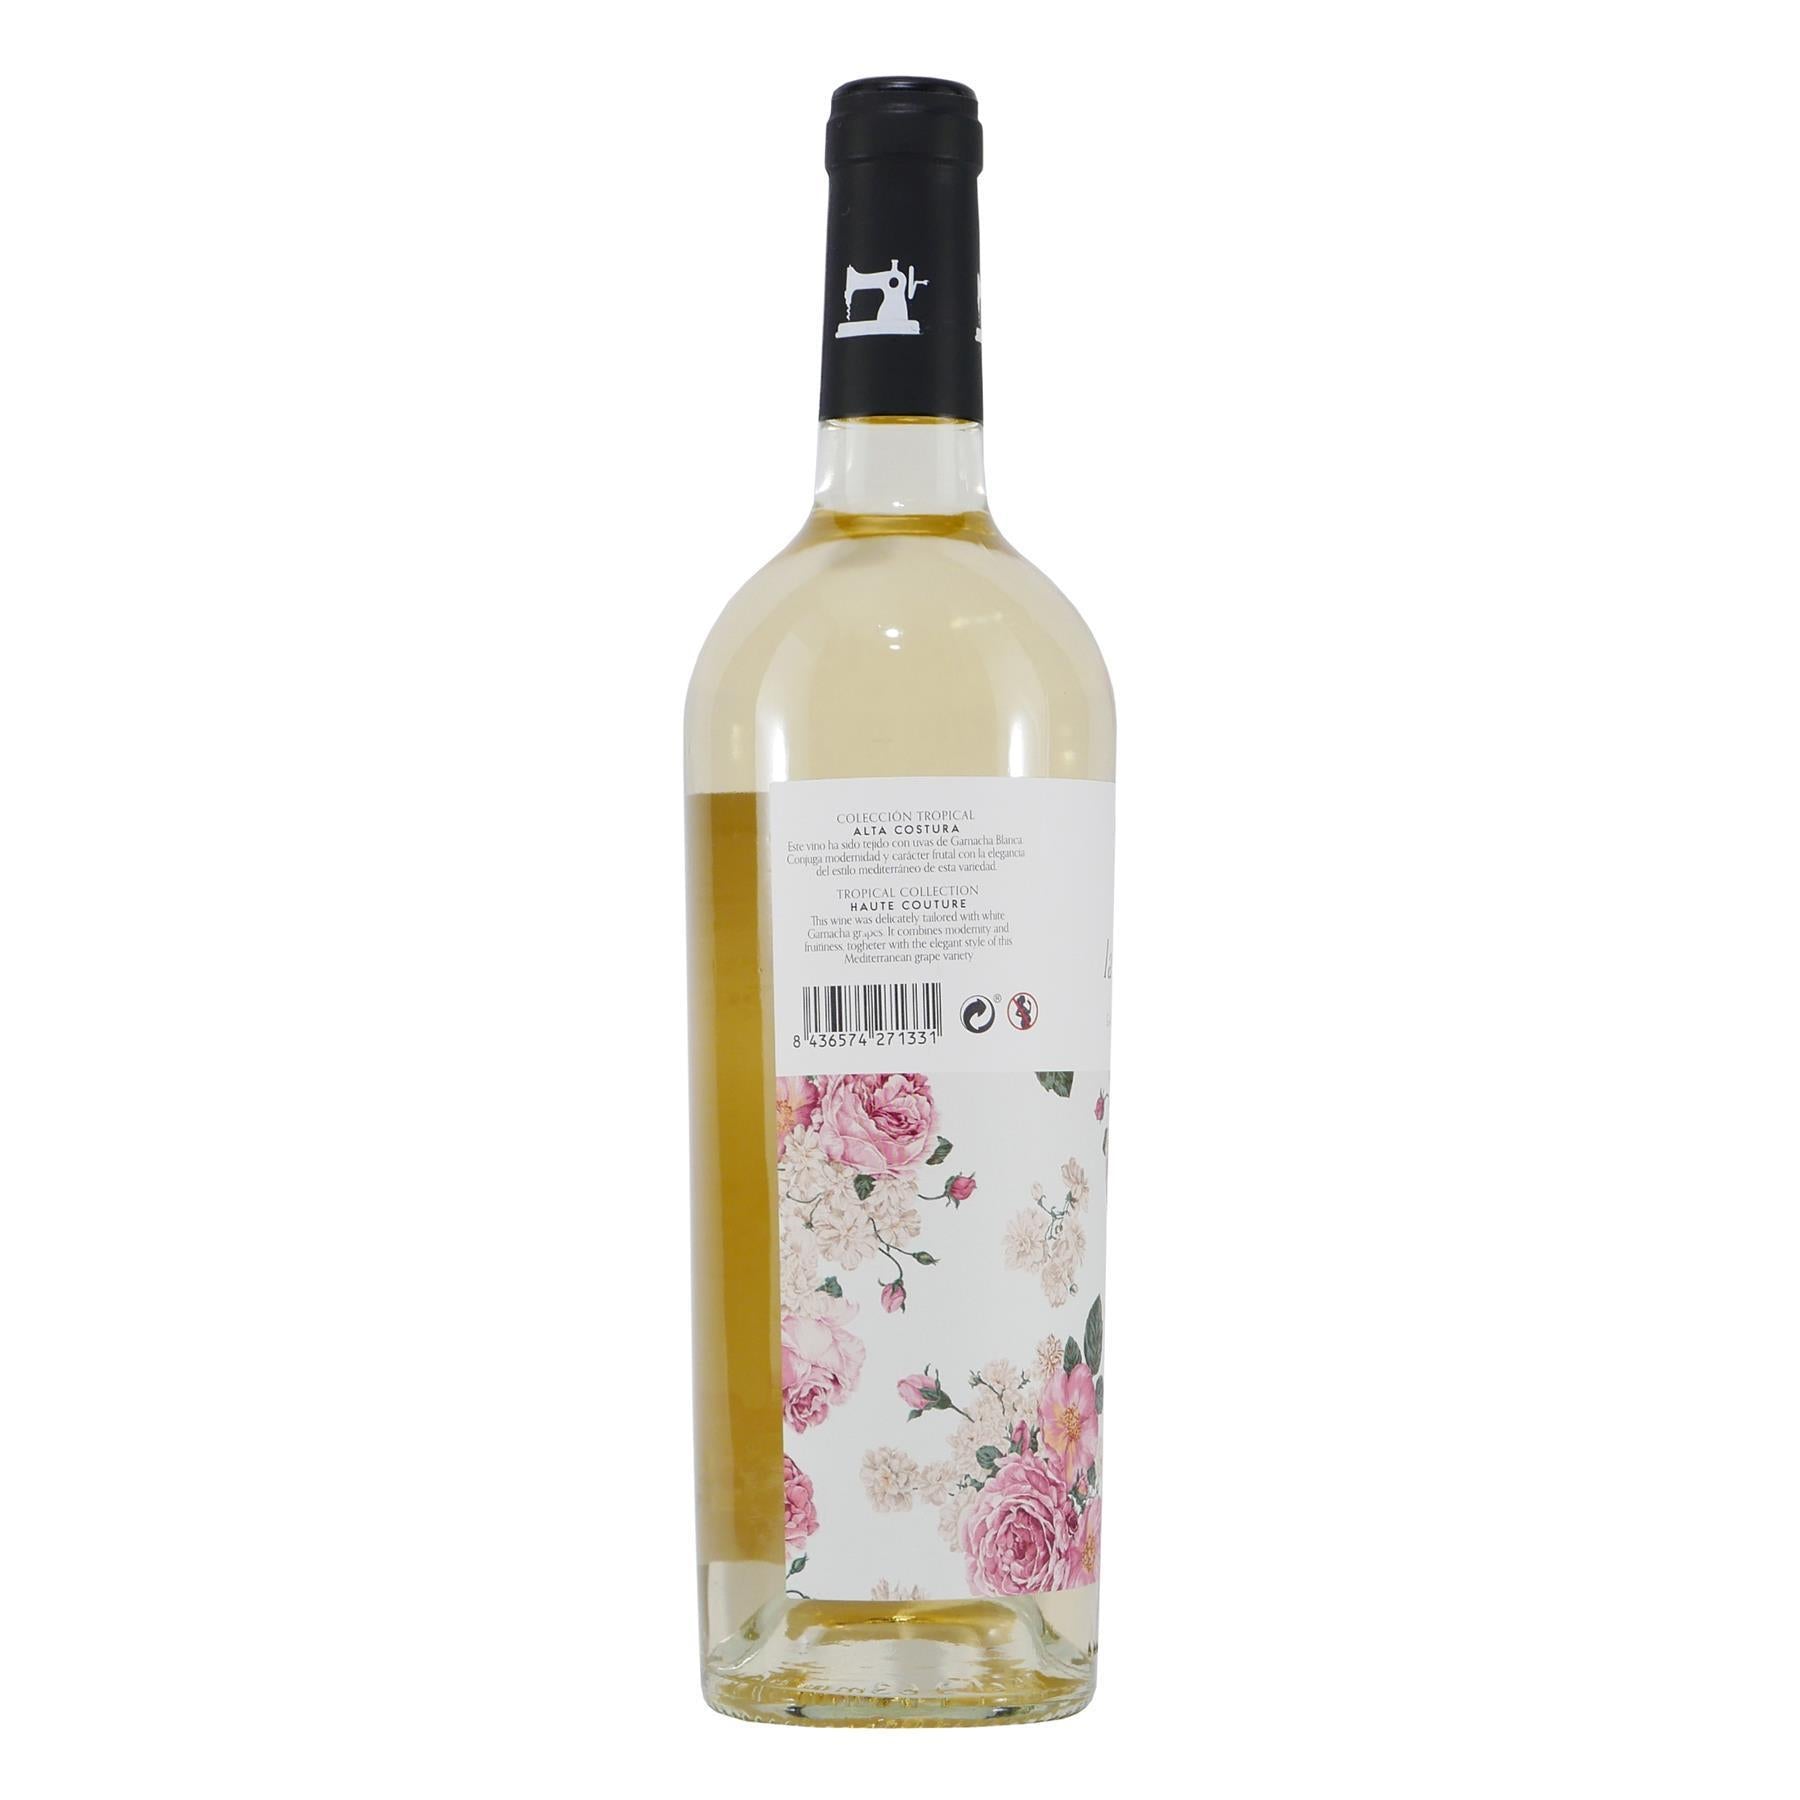 La Sastreria Blanca -trocken- Weißwein mit Geschenk-HK